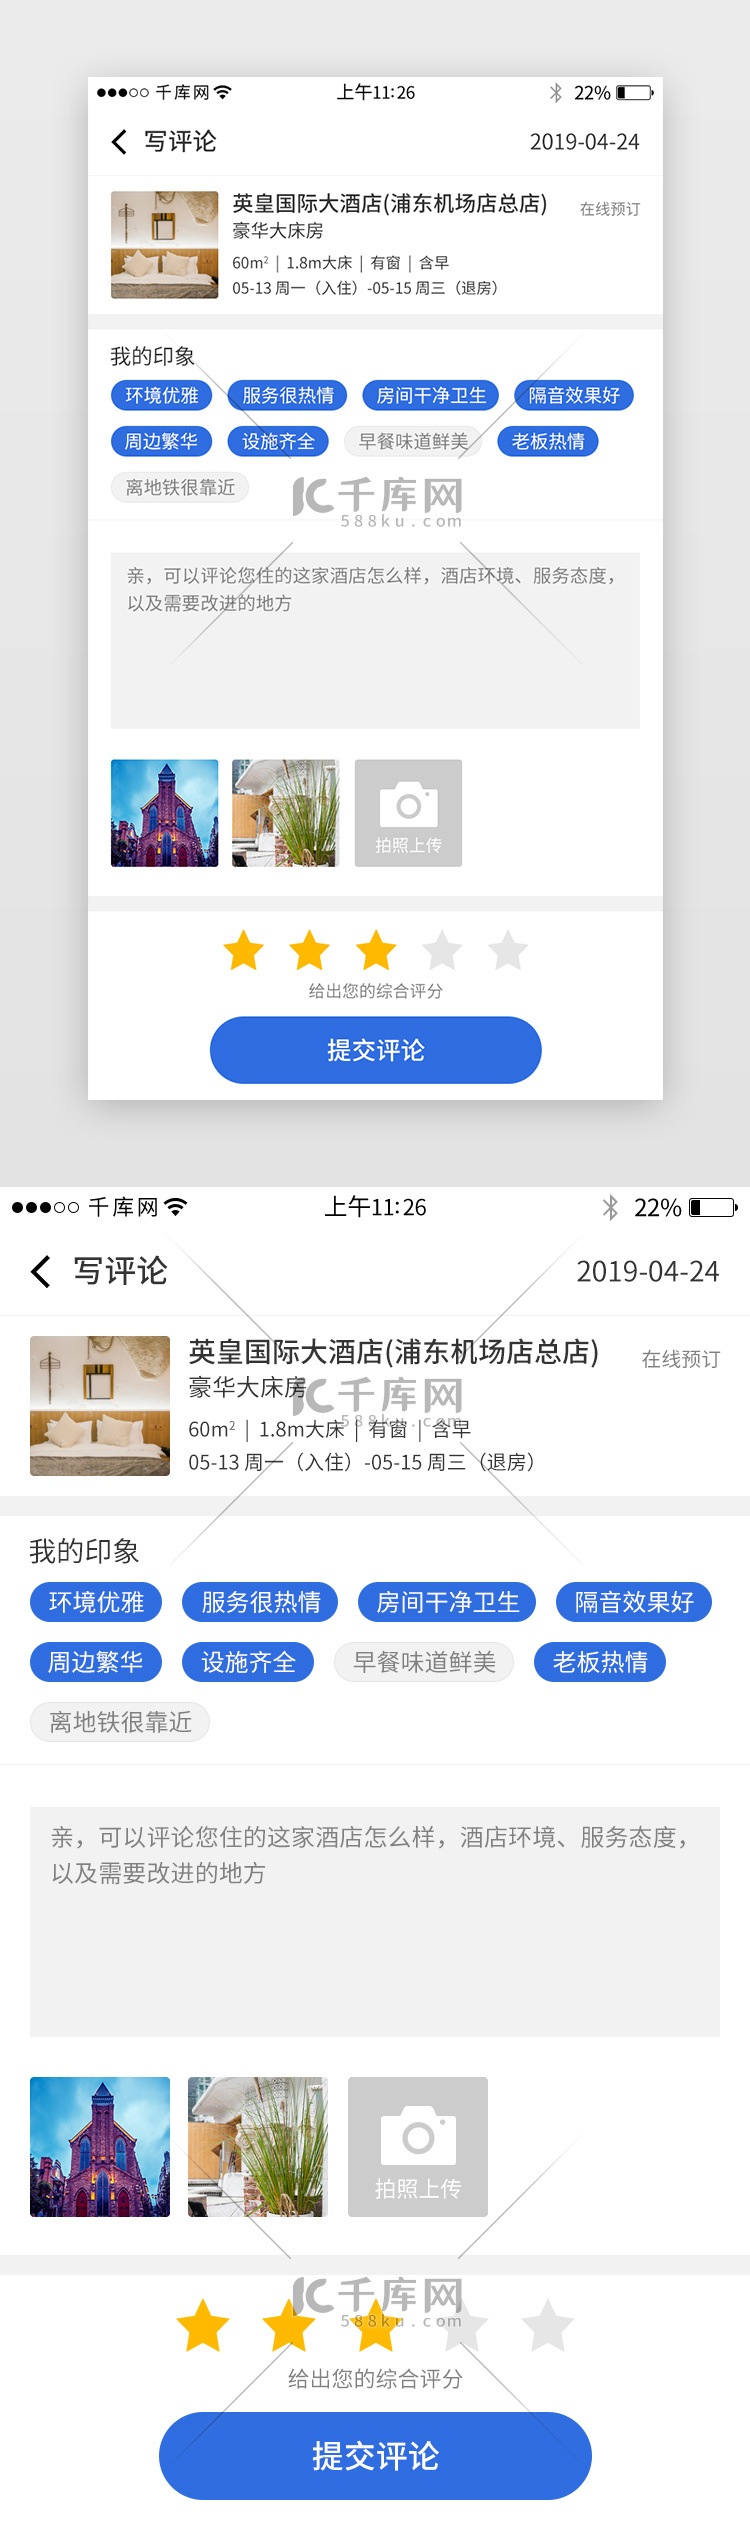 蓝色系团购app评论界面设计